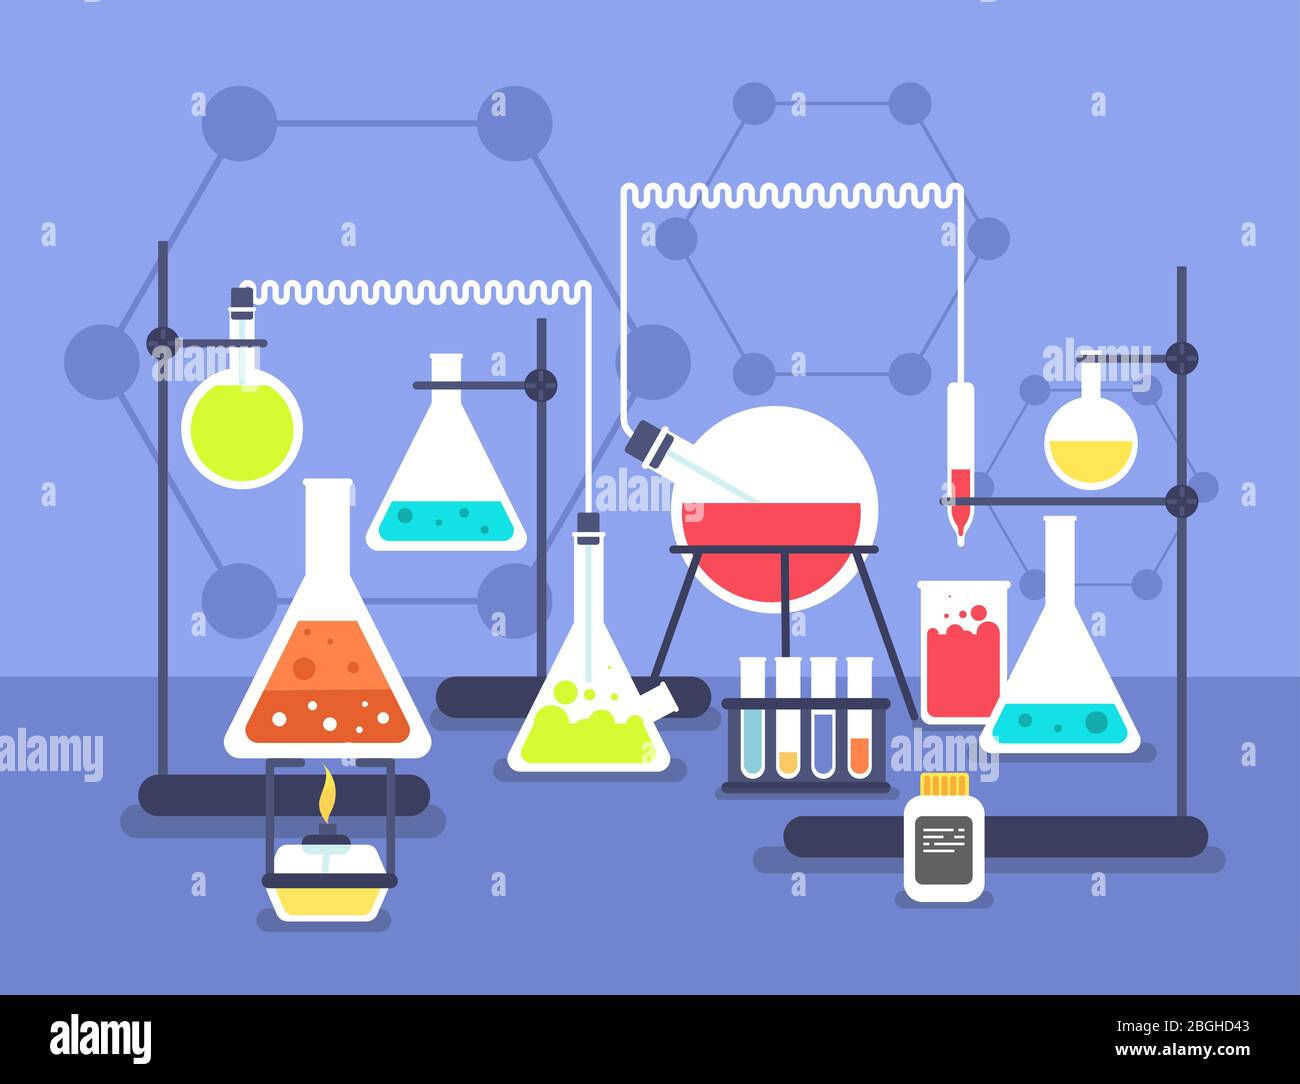 Laborexperiment Chemie. Forschung Labor Wissenschaft Technologie. Chemisches Labor Vektor flaches Konzept. Illustration der Wissenschaft chemische Bildung, Forschung und Experiment Stock Vektor